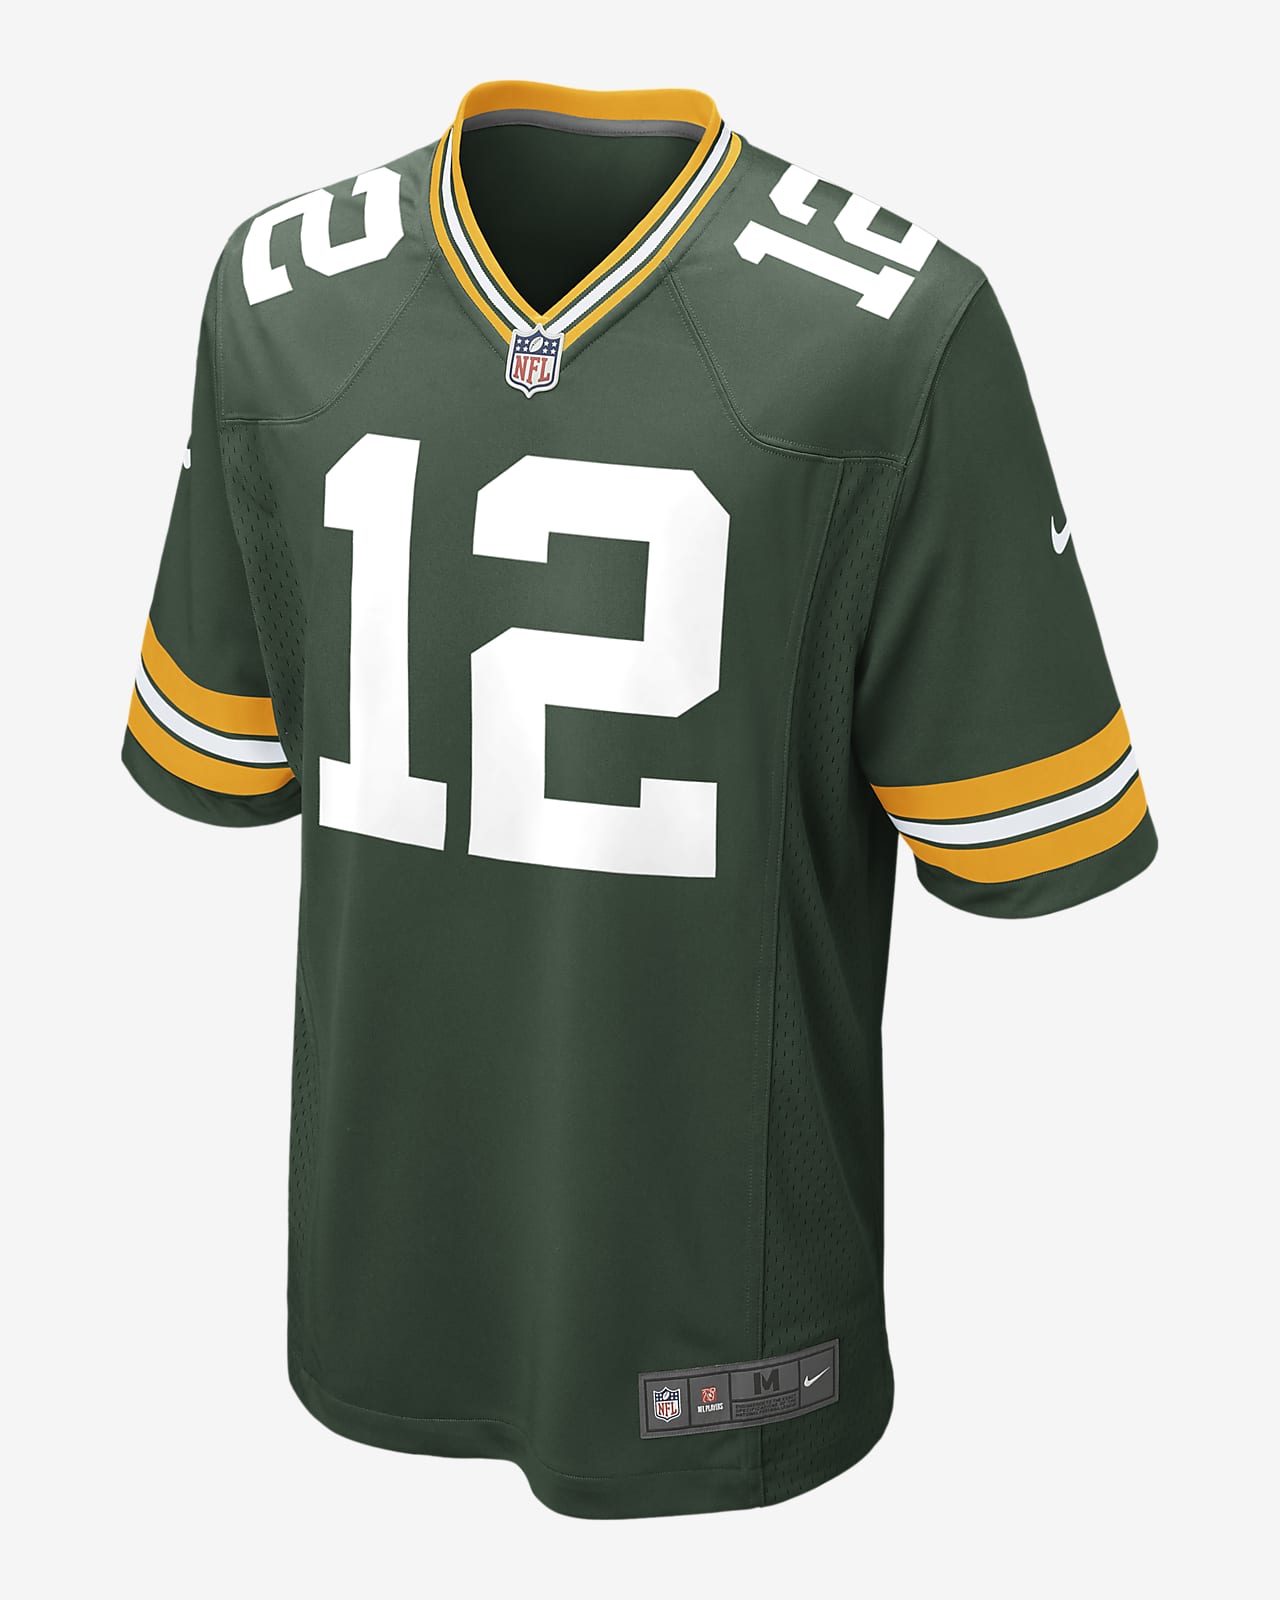 NFL Green Bay Packers (Aaron Rodgers) Samarreta de futbol americà - Home